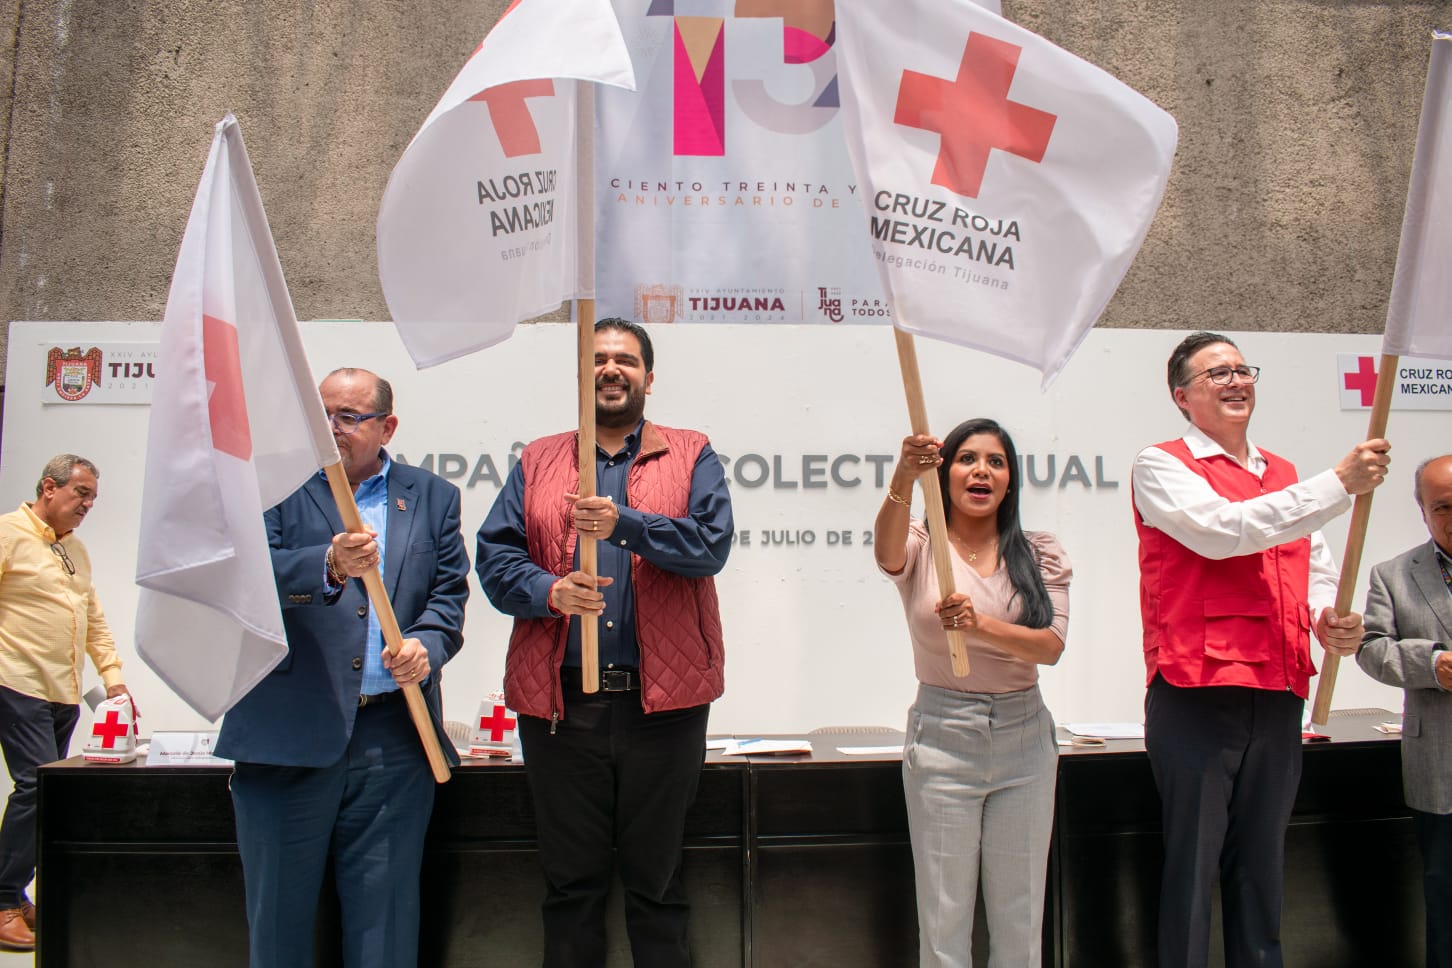 Alcaldía arranca colecta anual de Cruz Roja 2023